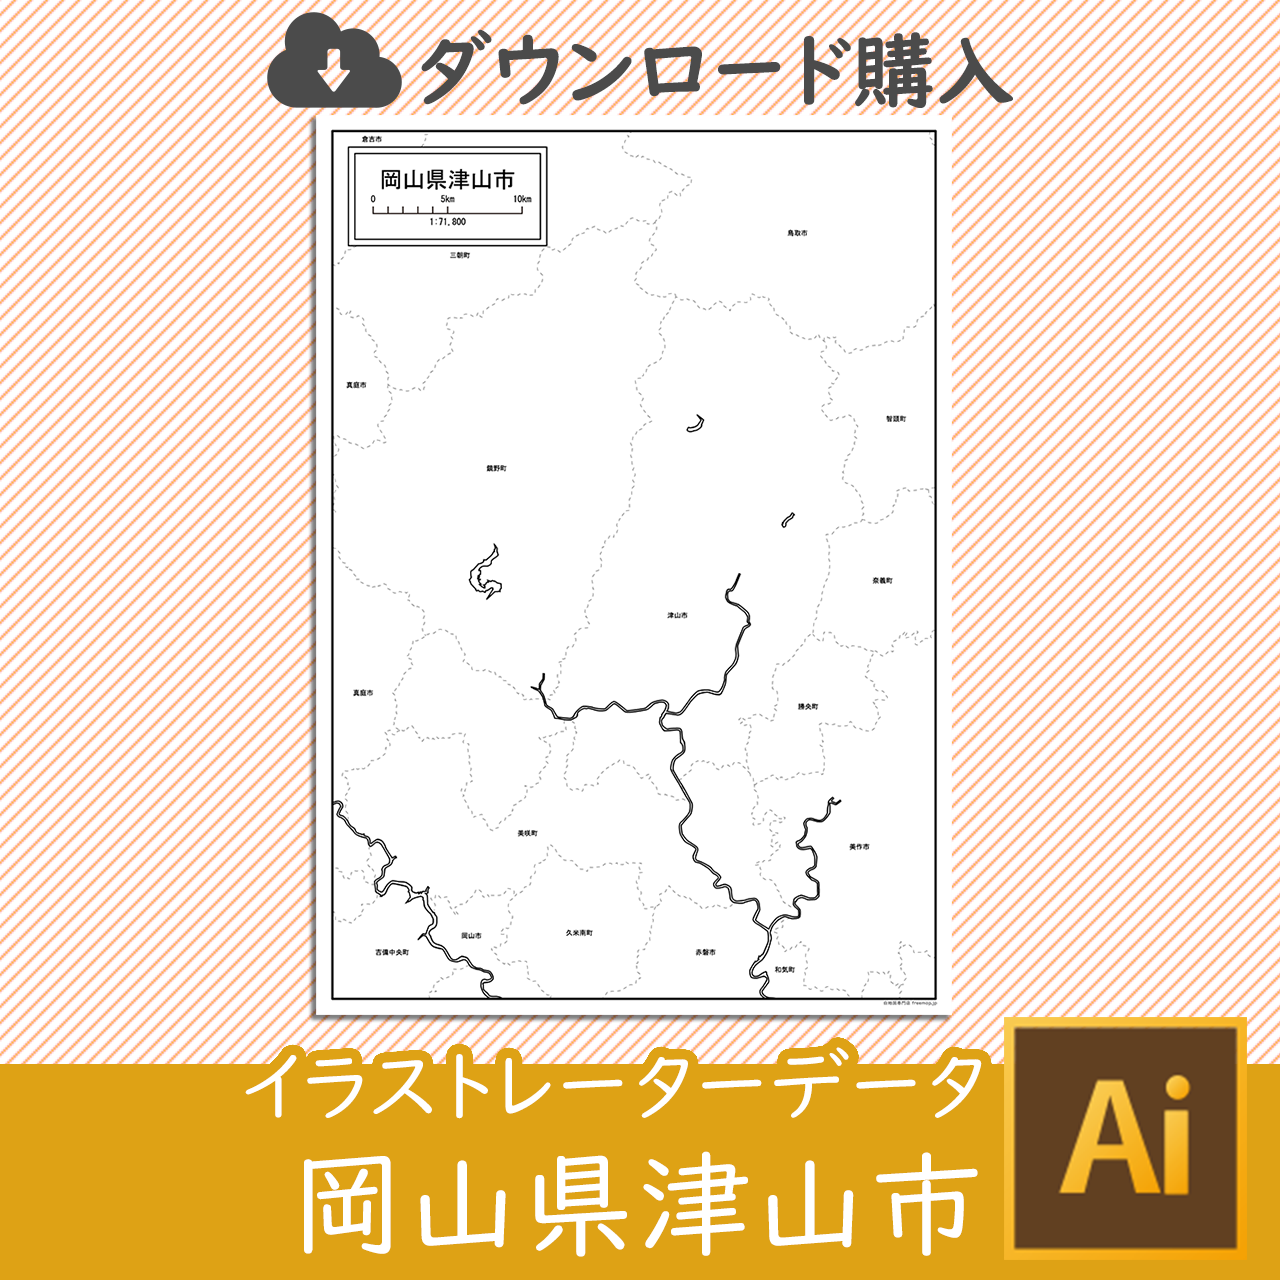 津山市のaiデータのサムネイル画像